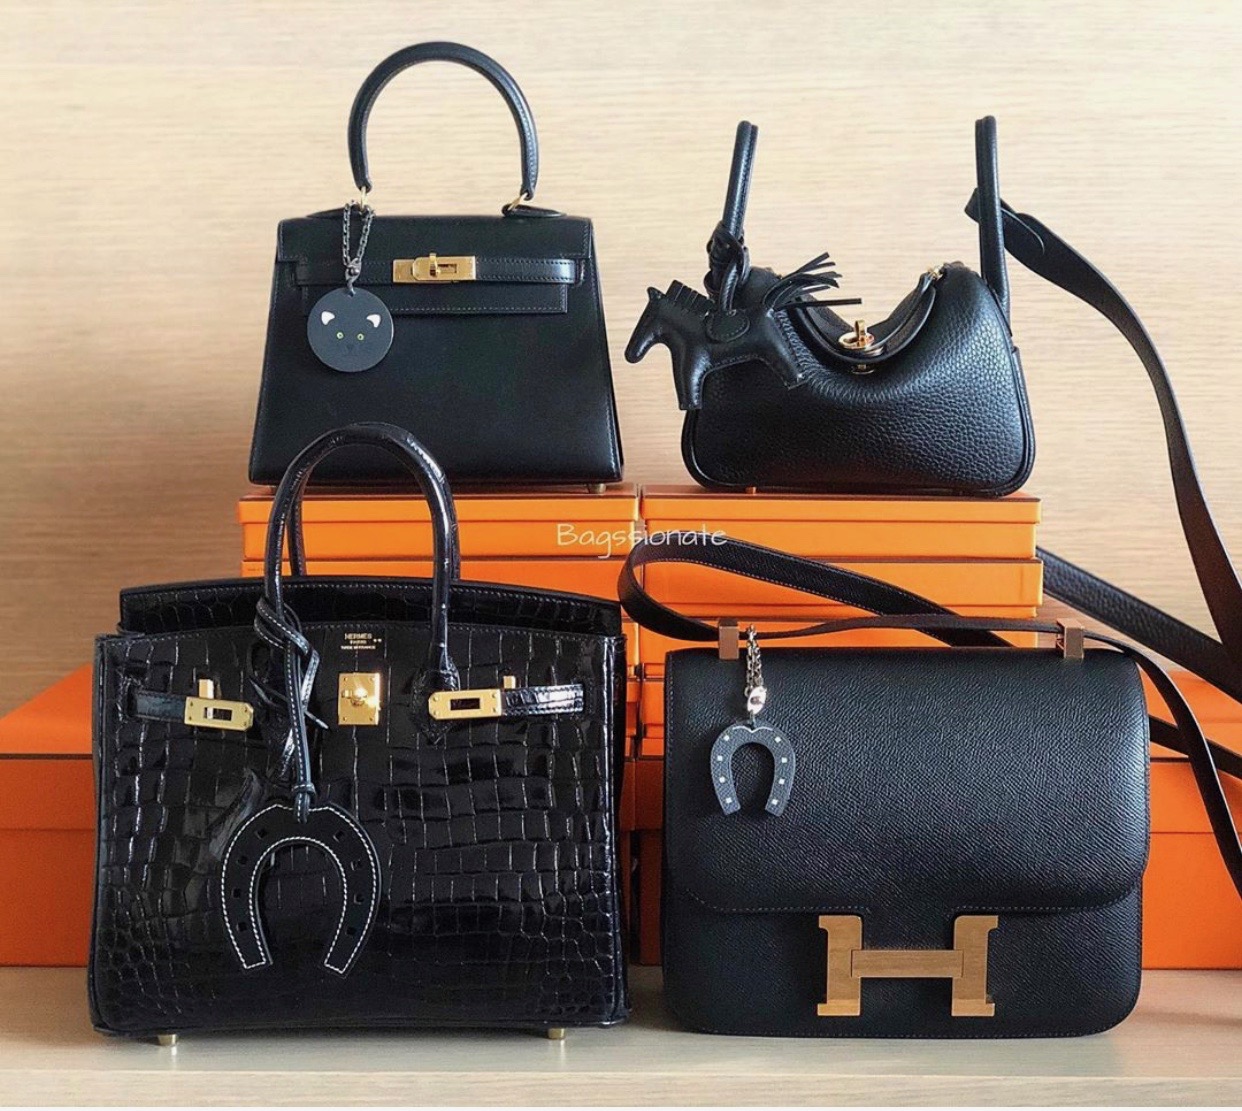 Hermès Black Bags in Every Price Range - PurseBop